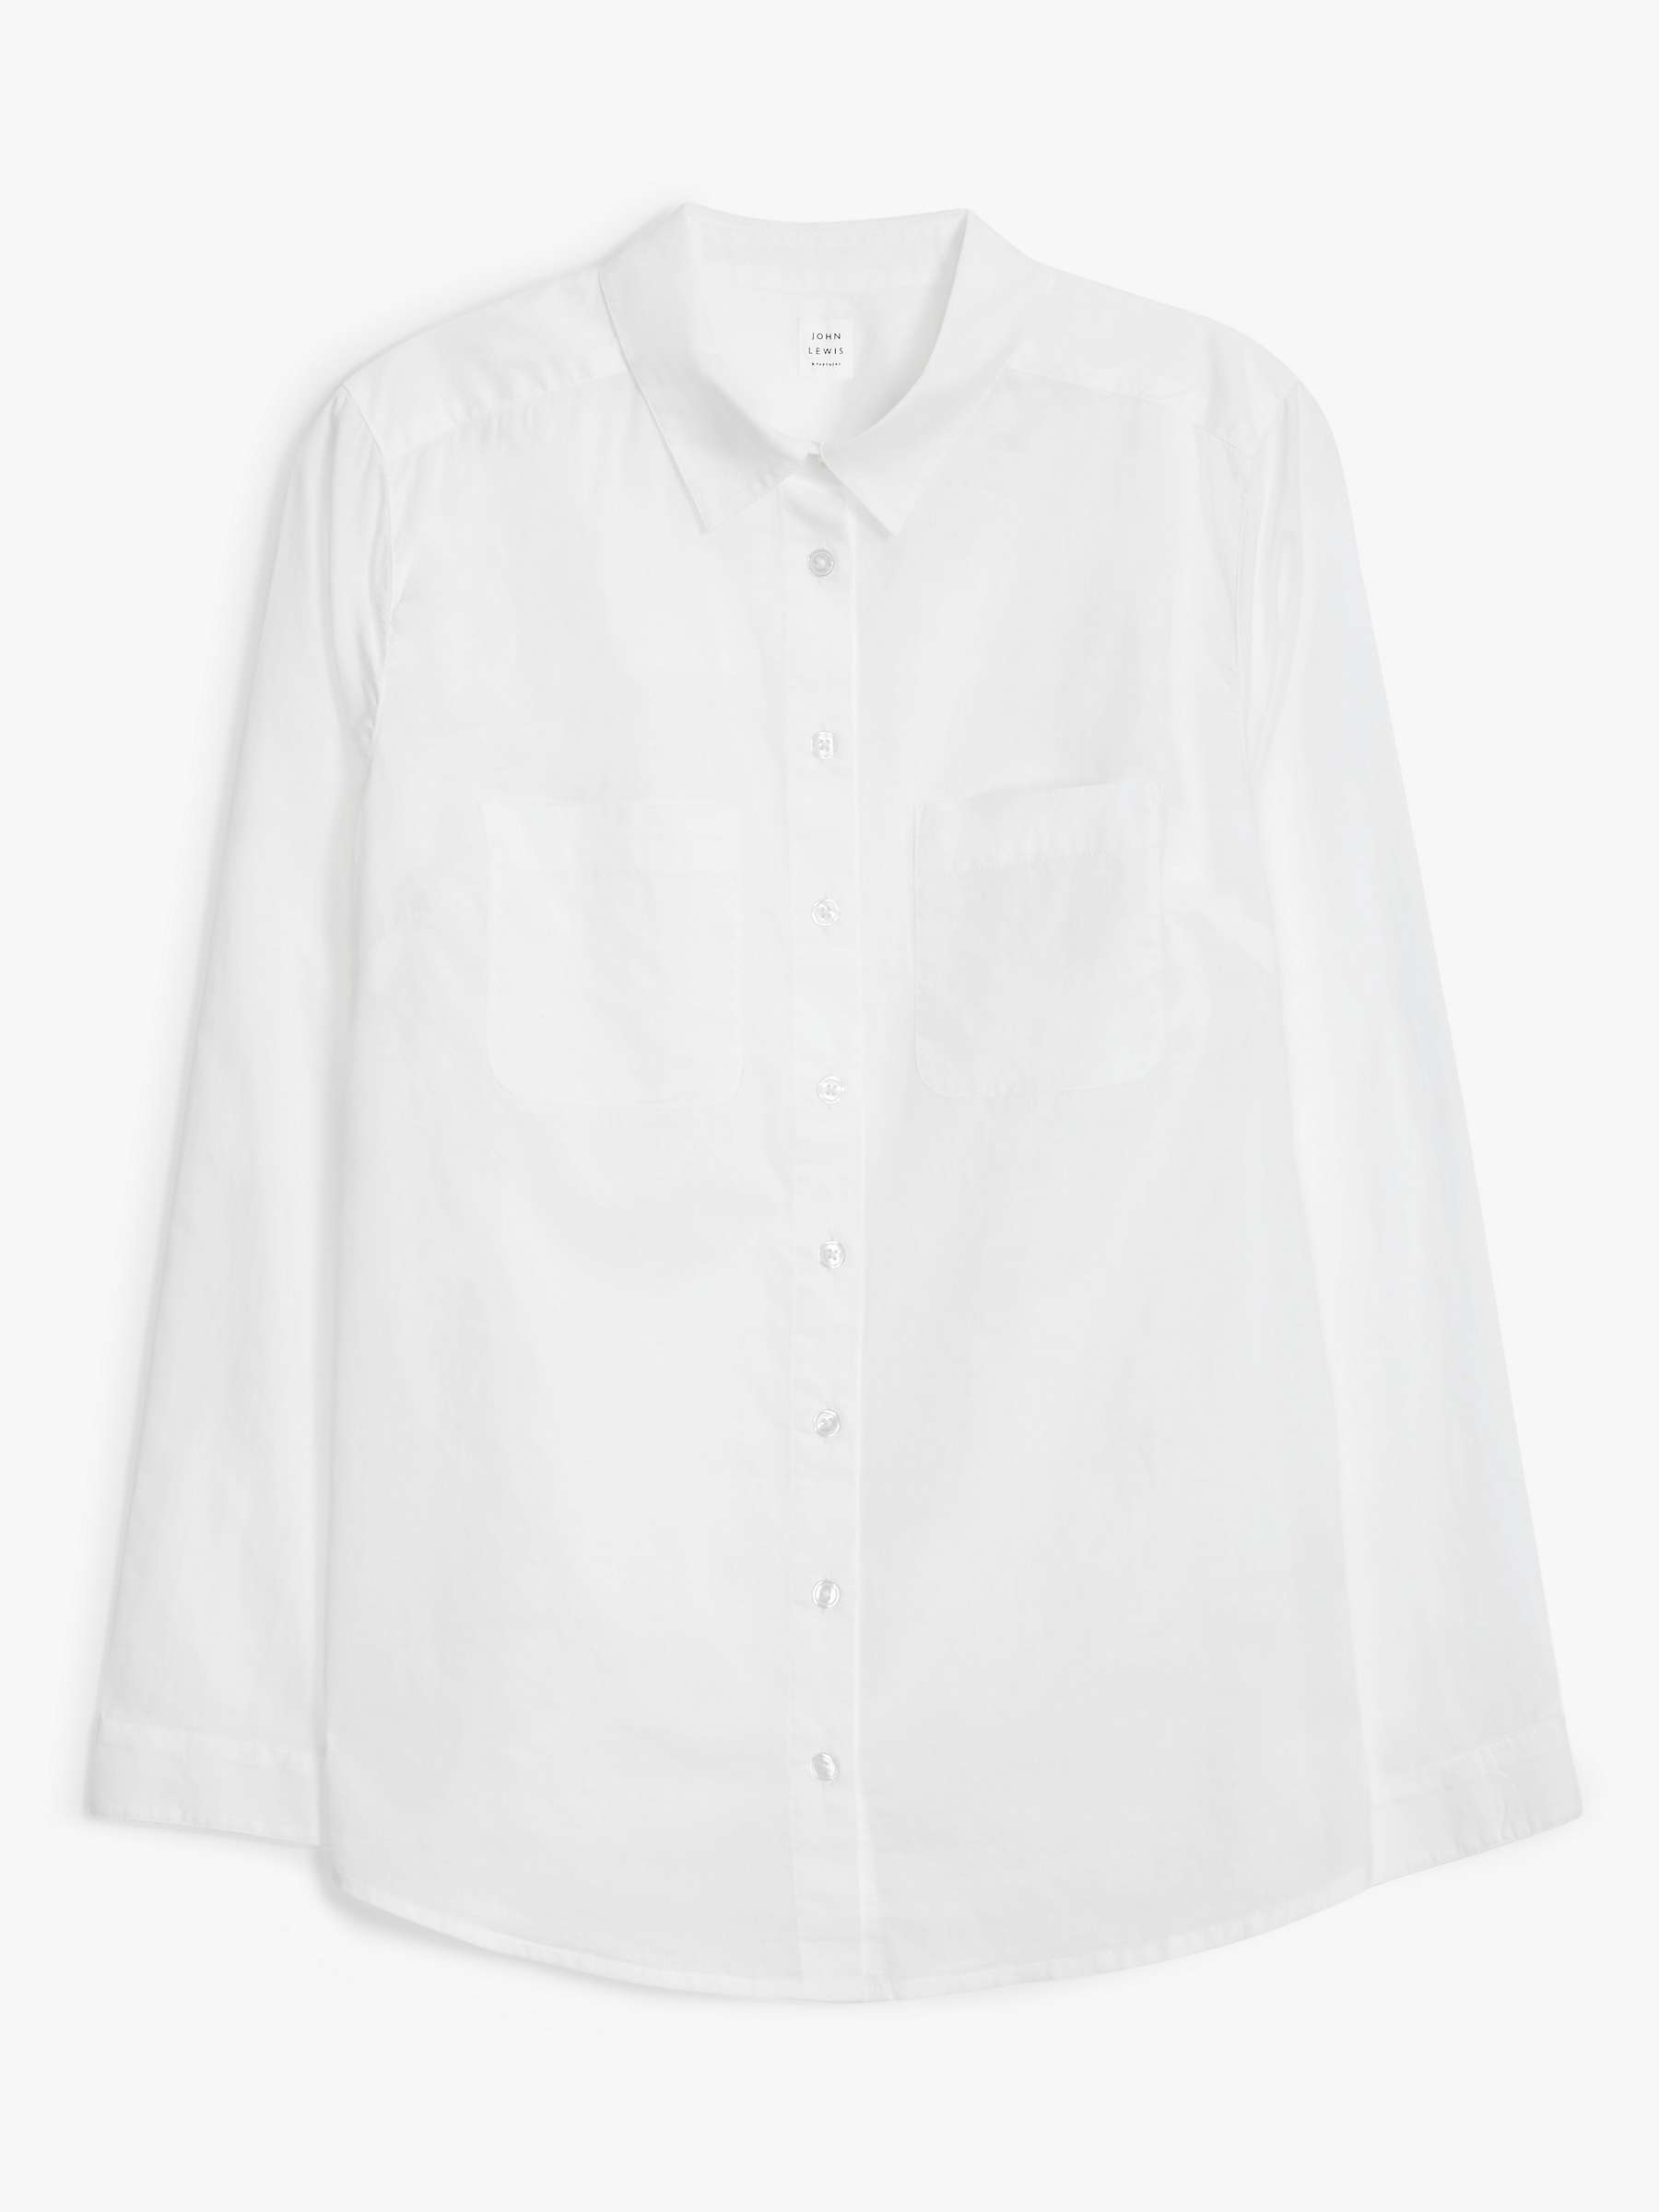 Buy John Lewis Basic Cotton Shirt Online at johnlewis.com